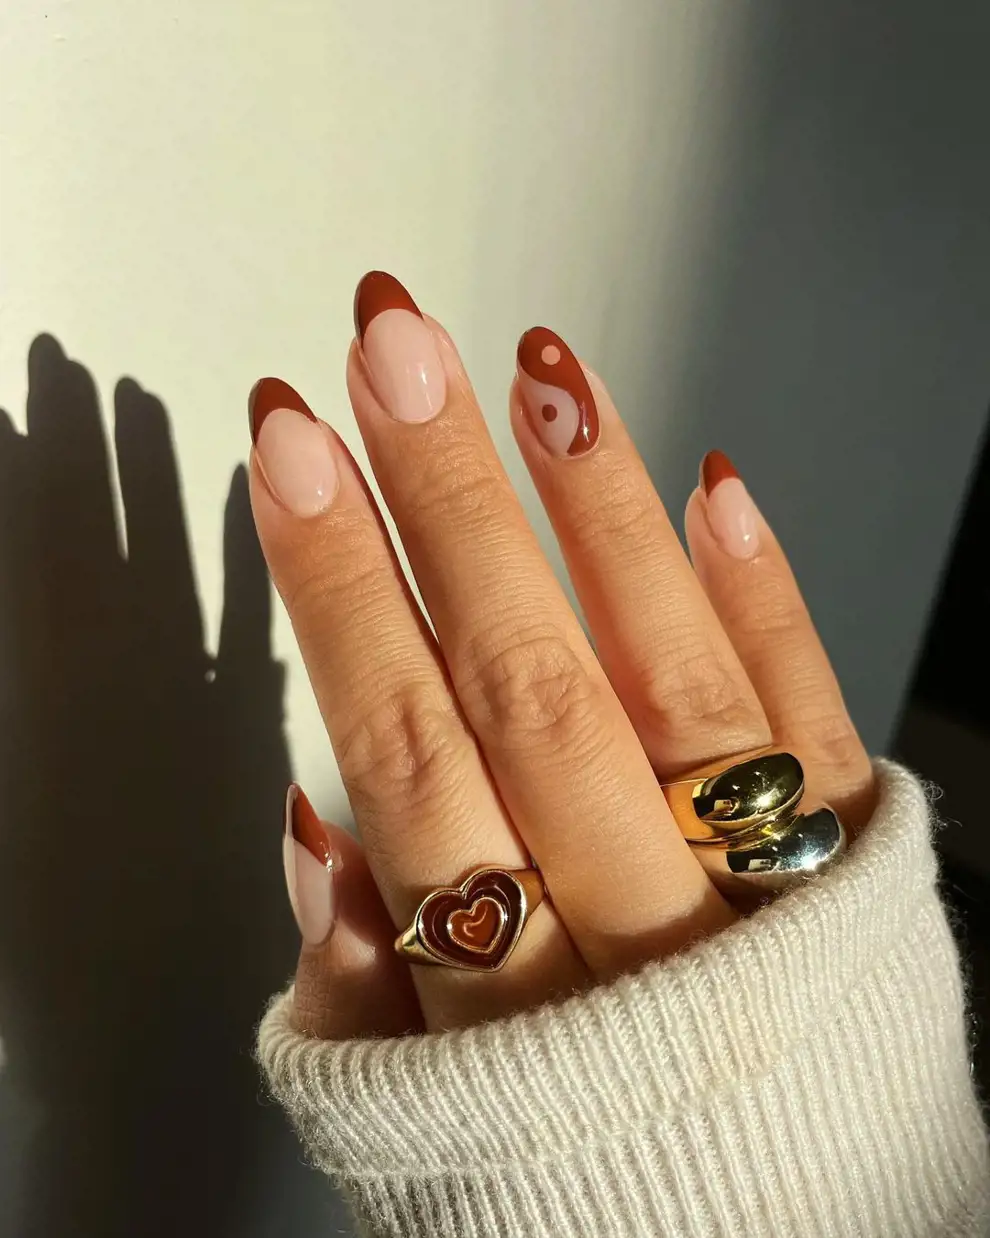 Uñas marrones: los diseños para inspirar la manicura más cálida y que siempre apetece